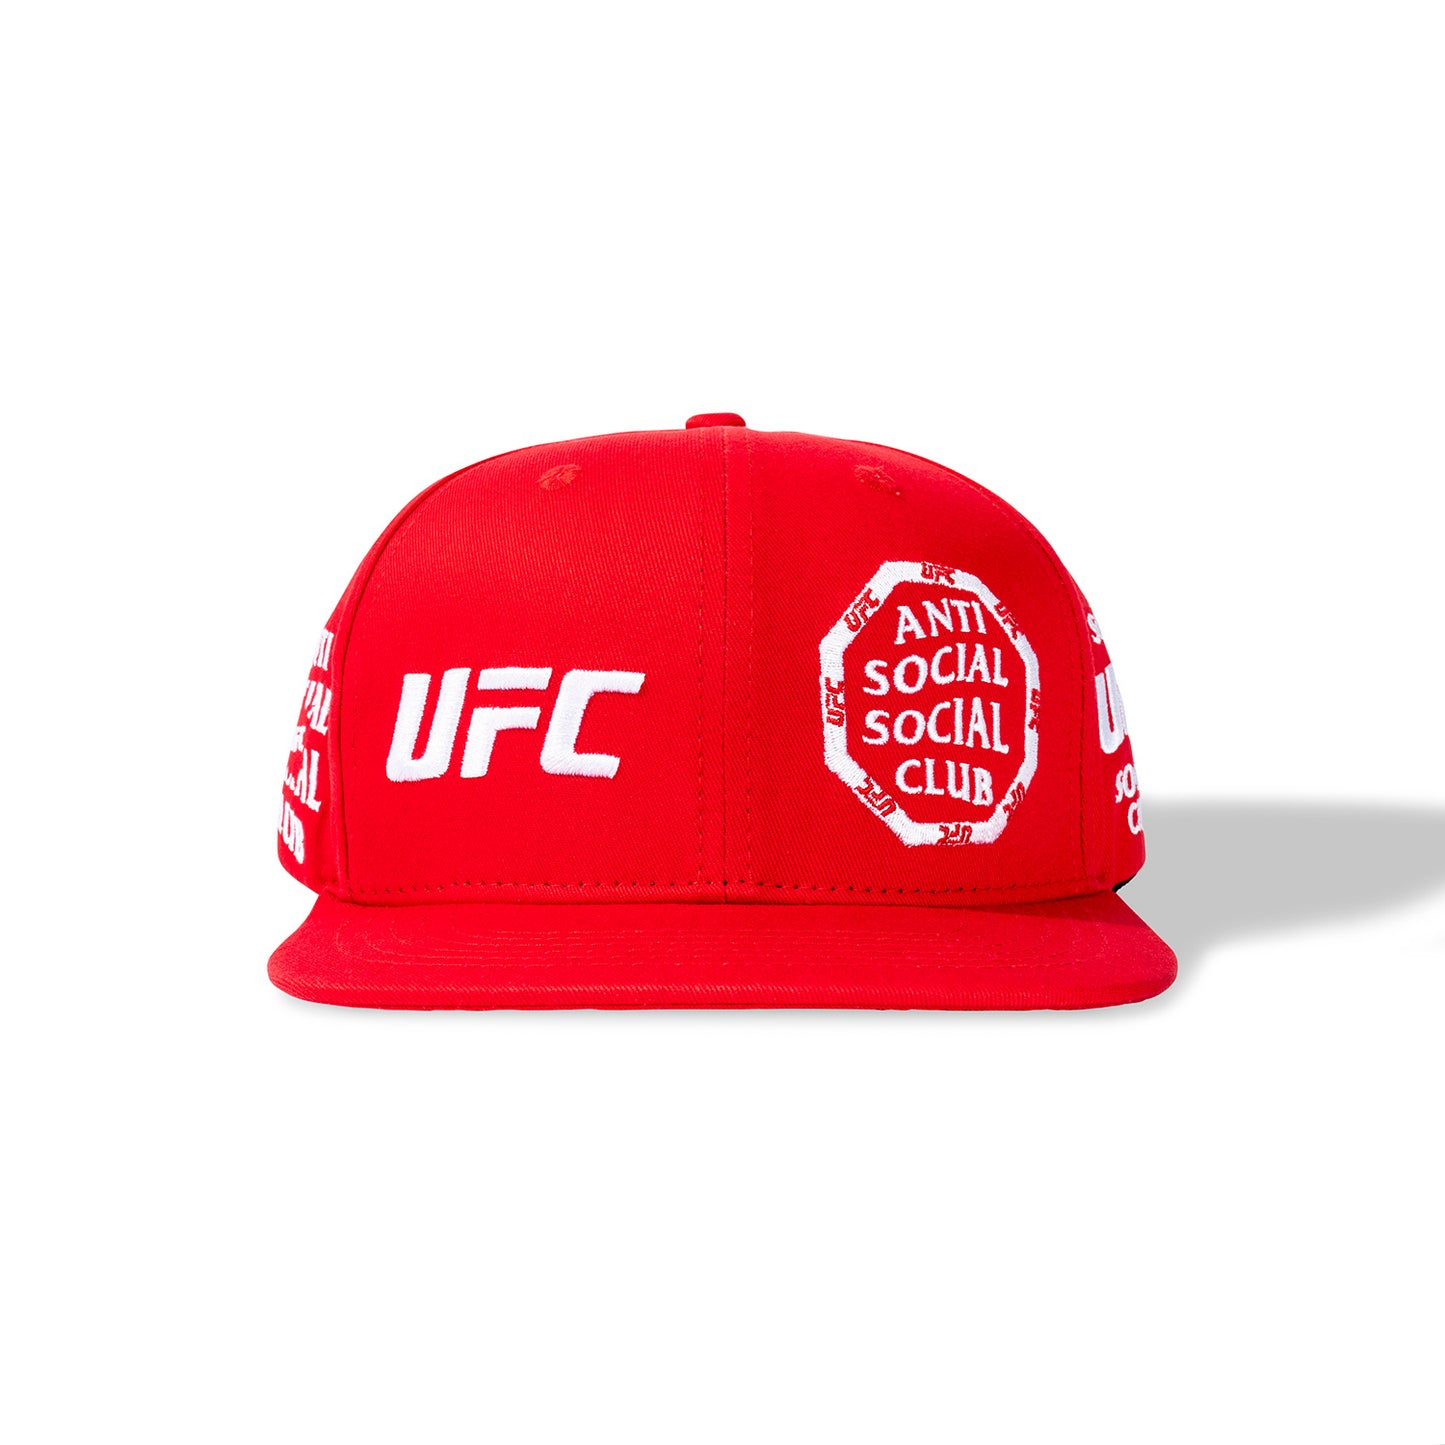 ASSC x UFC Self-Titled Cap - Red